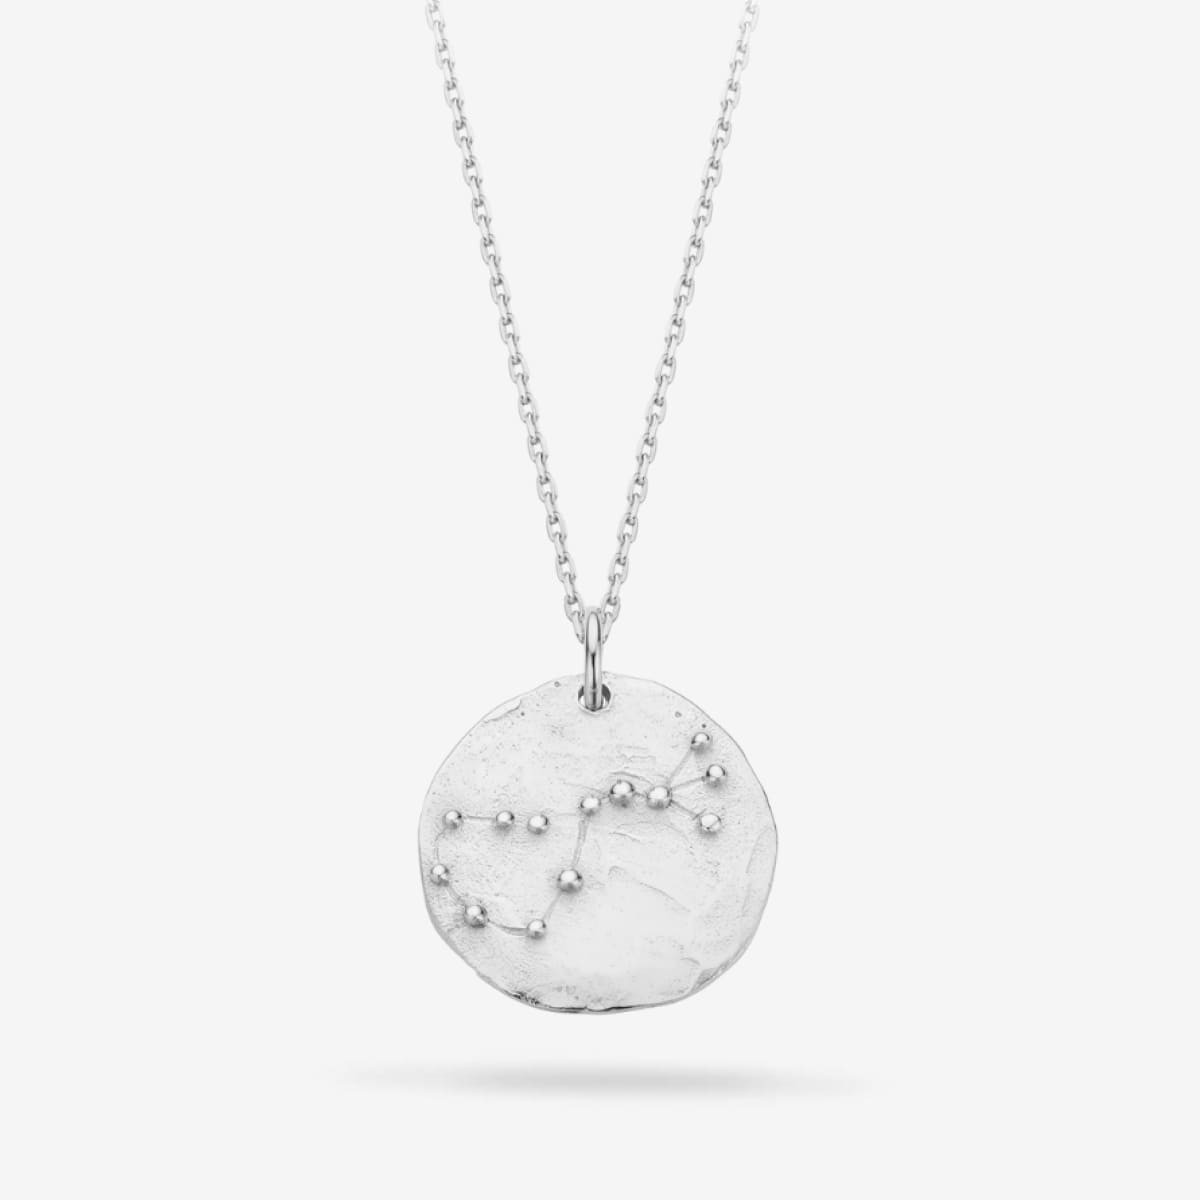 Constellation Scorpio Medallion Silver - Halsketten - Silber